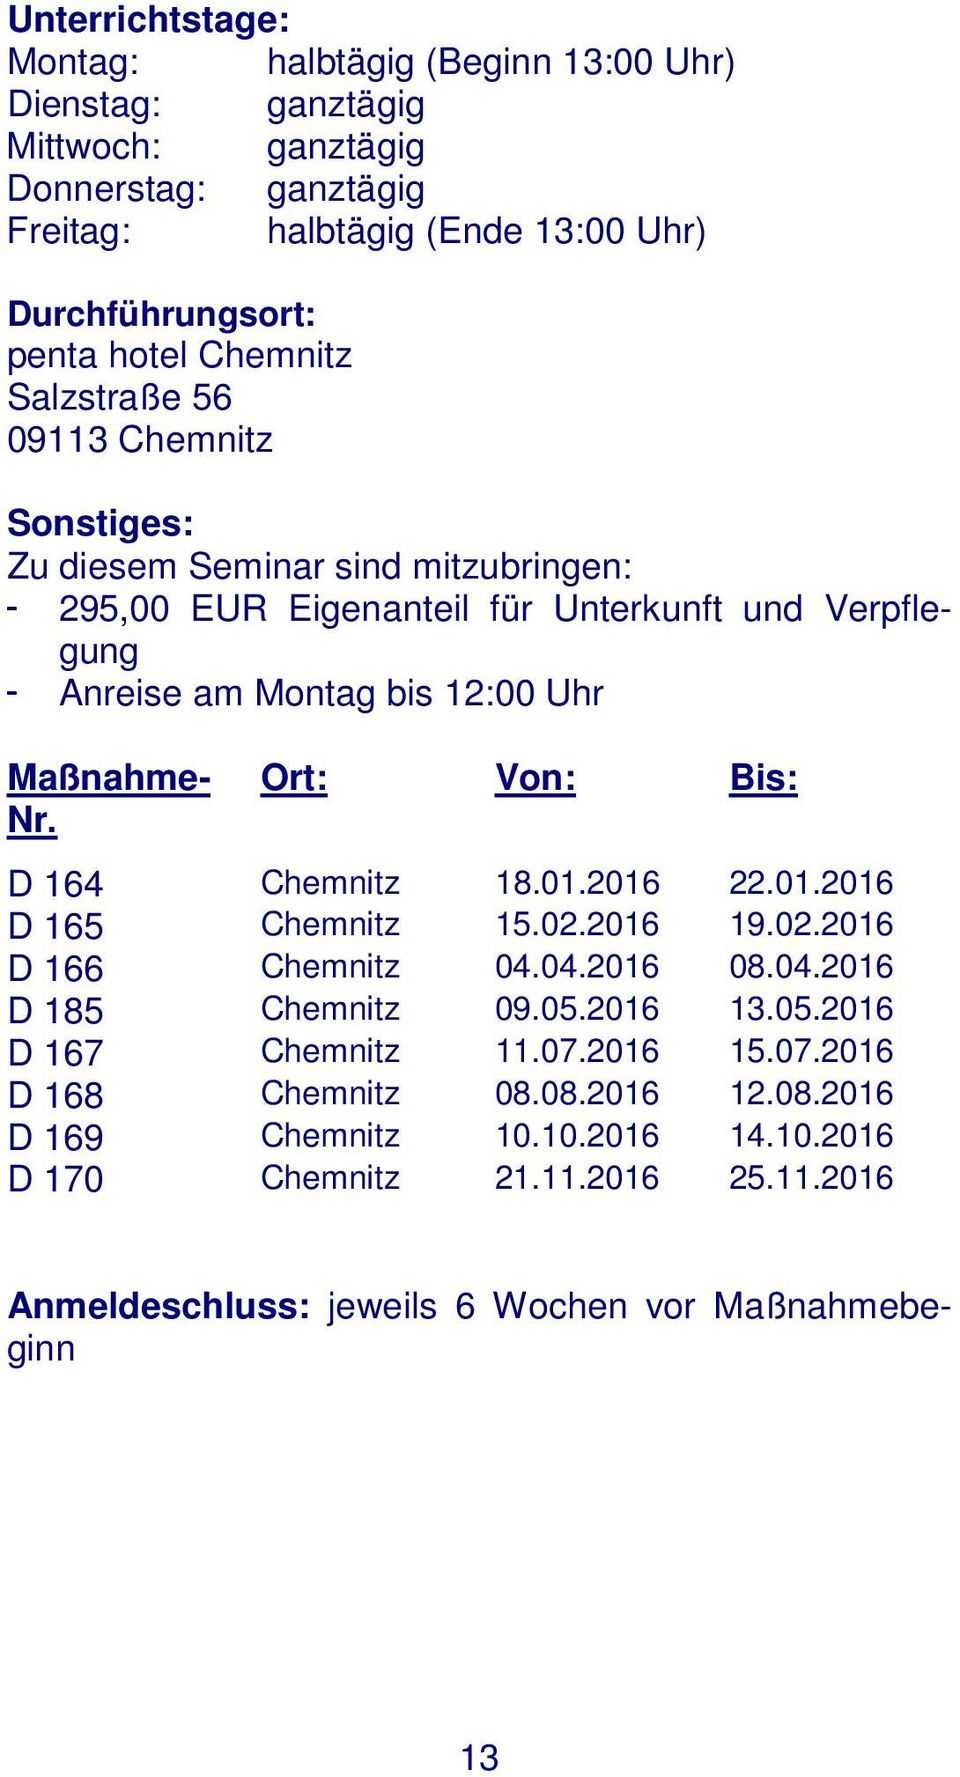 Maßnahme- Nr. Ort: Von: Bis: D 164 Chemnitz 18.01.2016 22.01.2016 D 165 Chemnitz 15.02.2016 19.02.2016 D 166 Chemnitz 04.04.2016 08.04.2016 D 185 Chemnitz 09.05.2016 13.05.2016 D 167 Chemnitz 11.